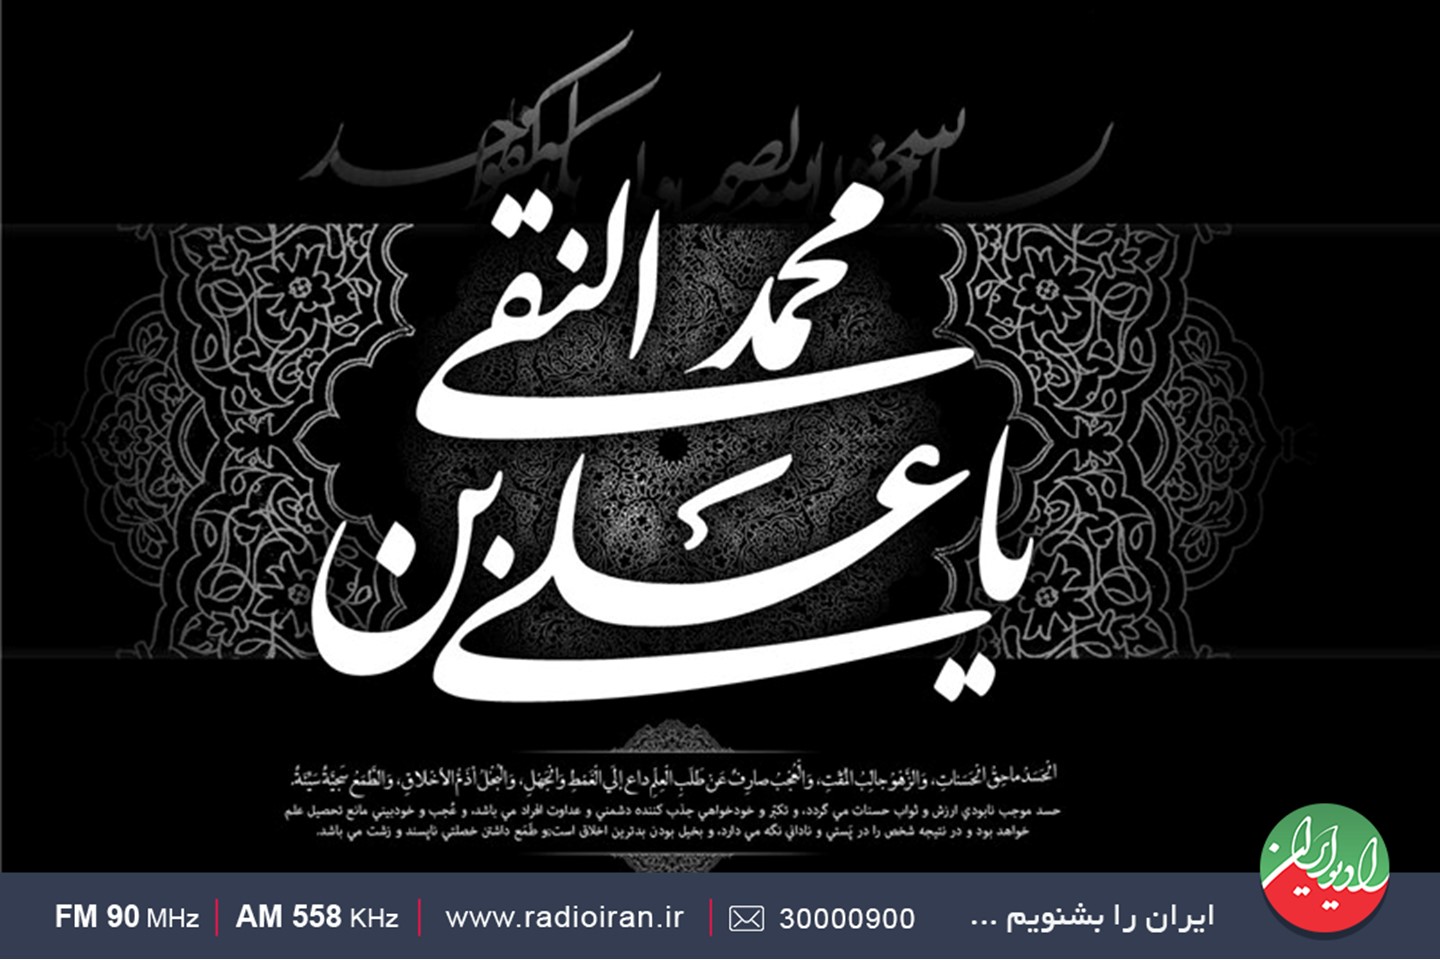 رادیو ایران در سوگ  شهادت امام علی النقی(ع)